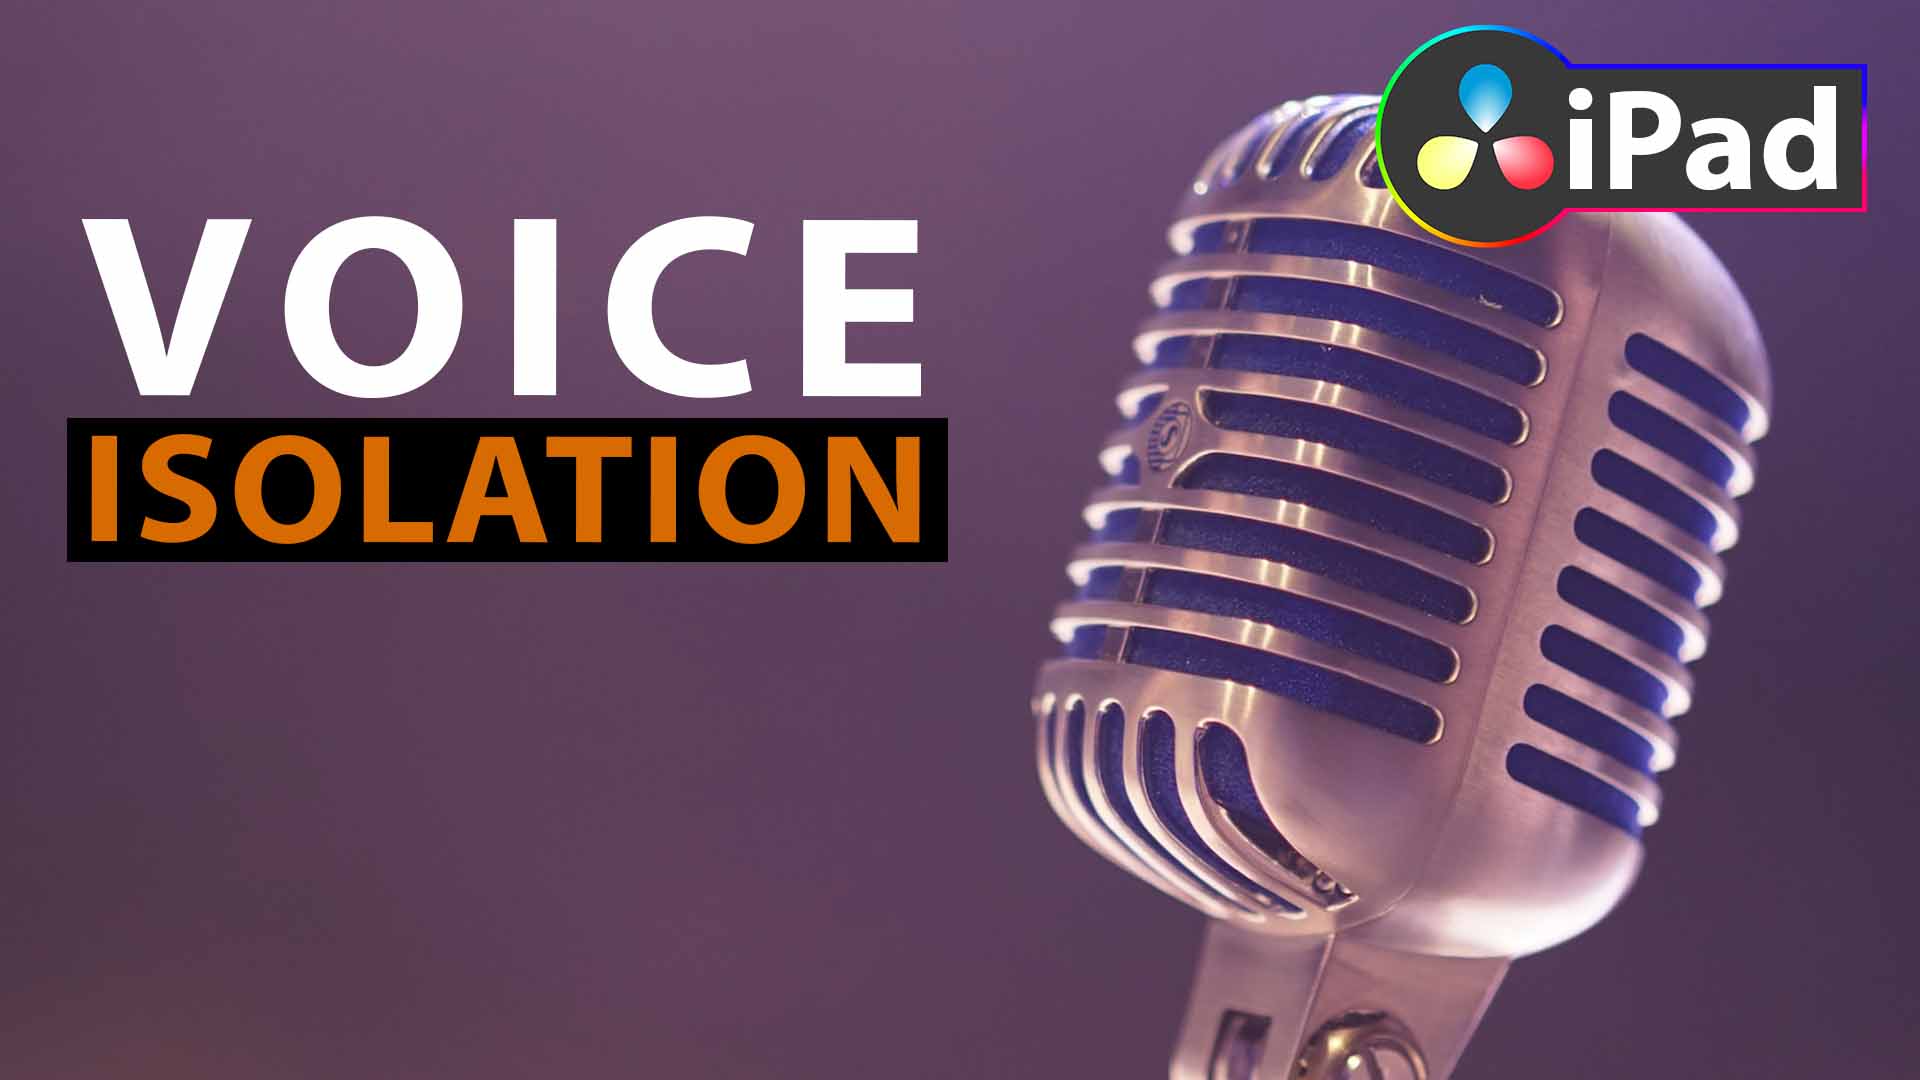 DaVinci Resolve iPad: VOICE ISOLATION erklärt!